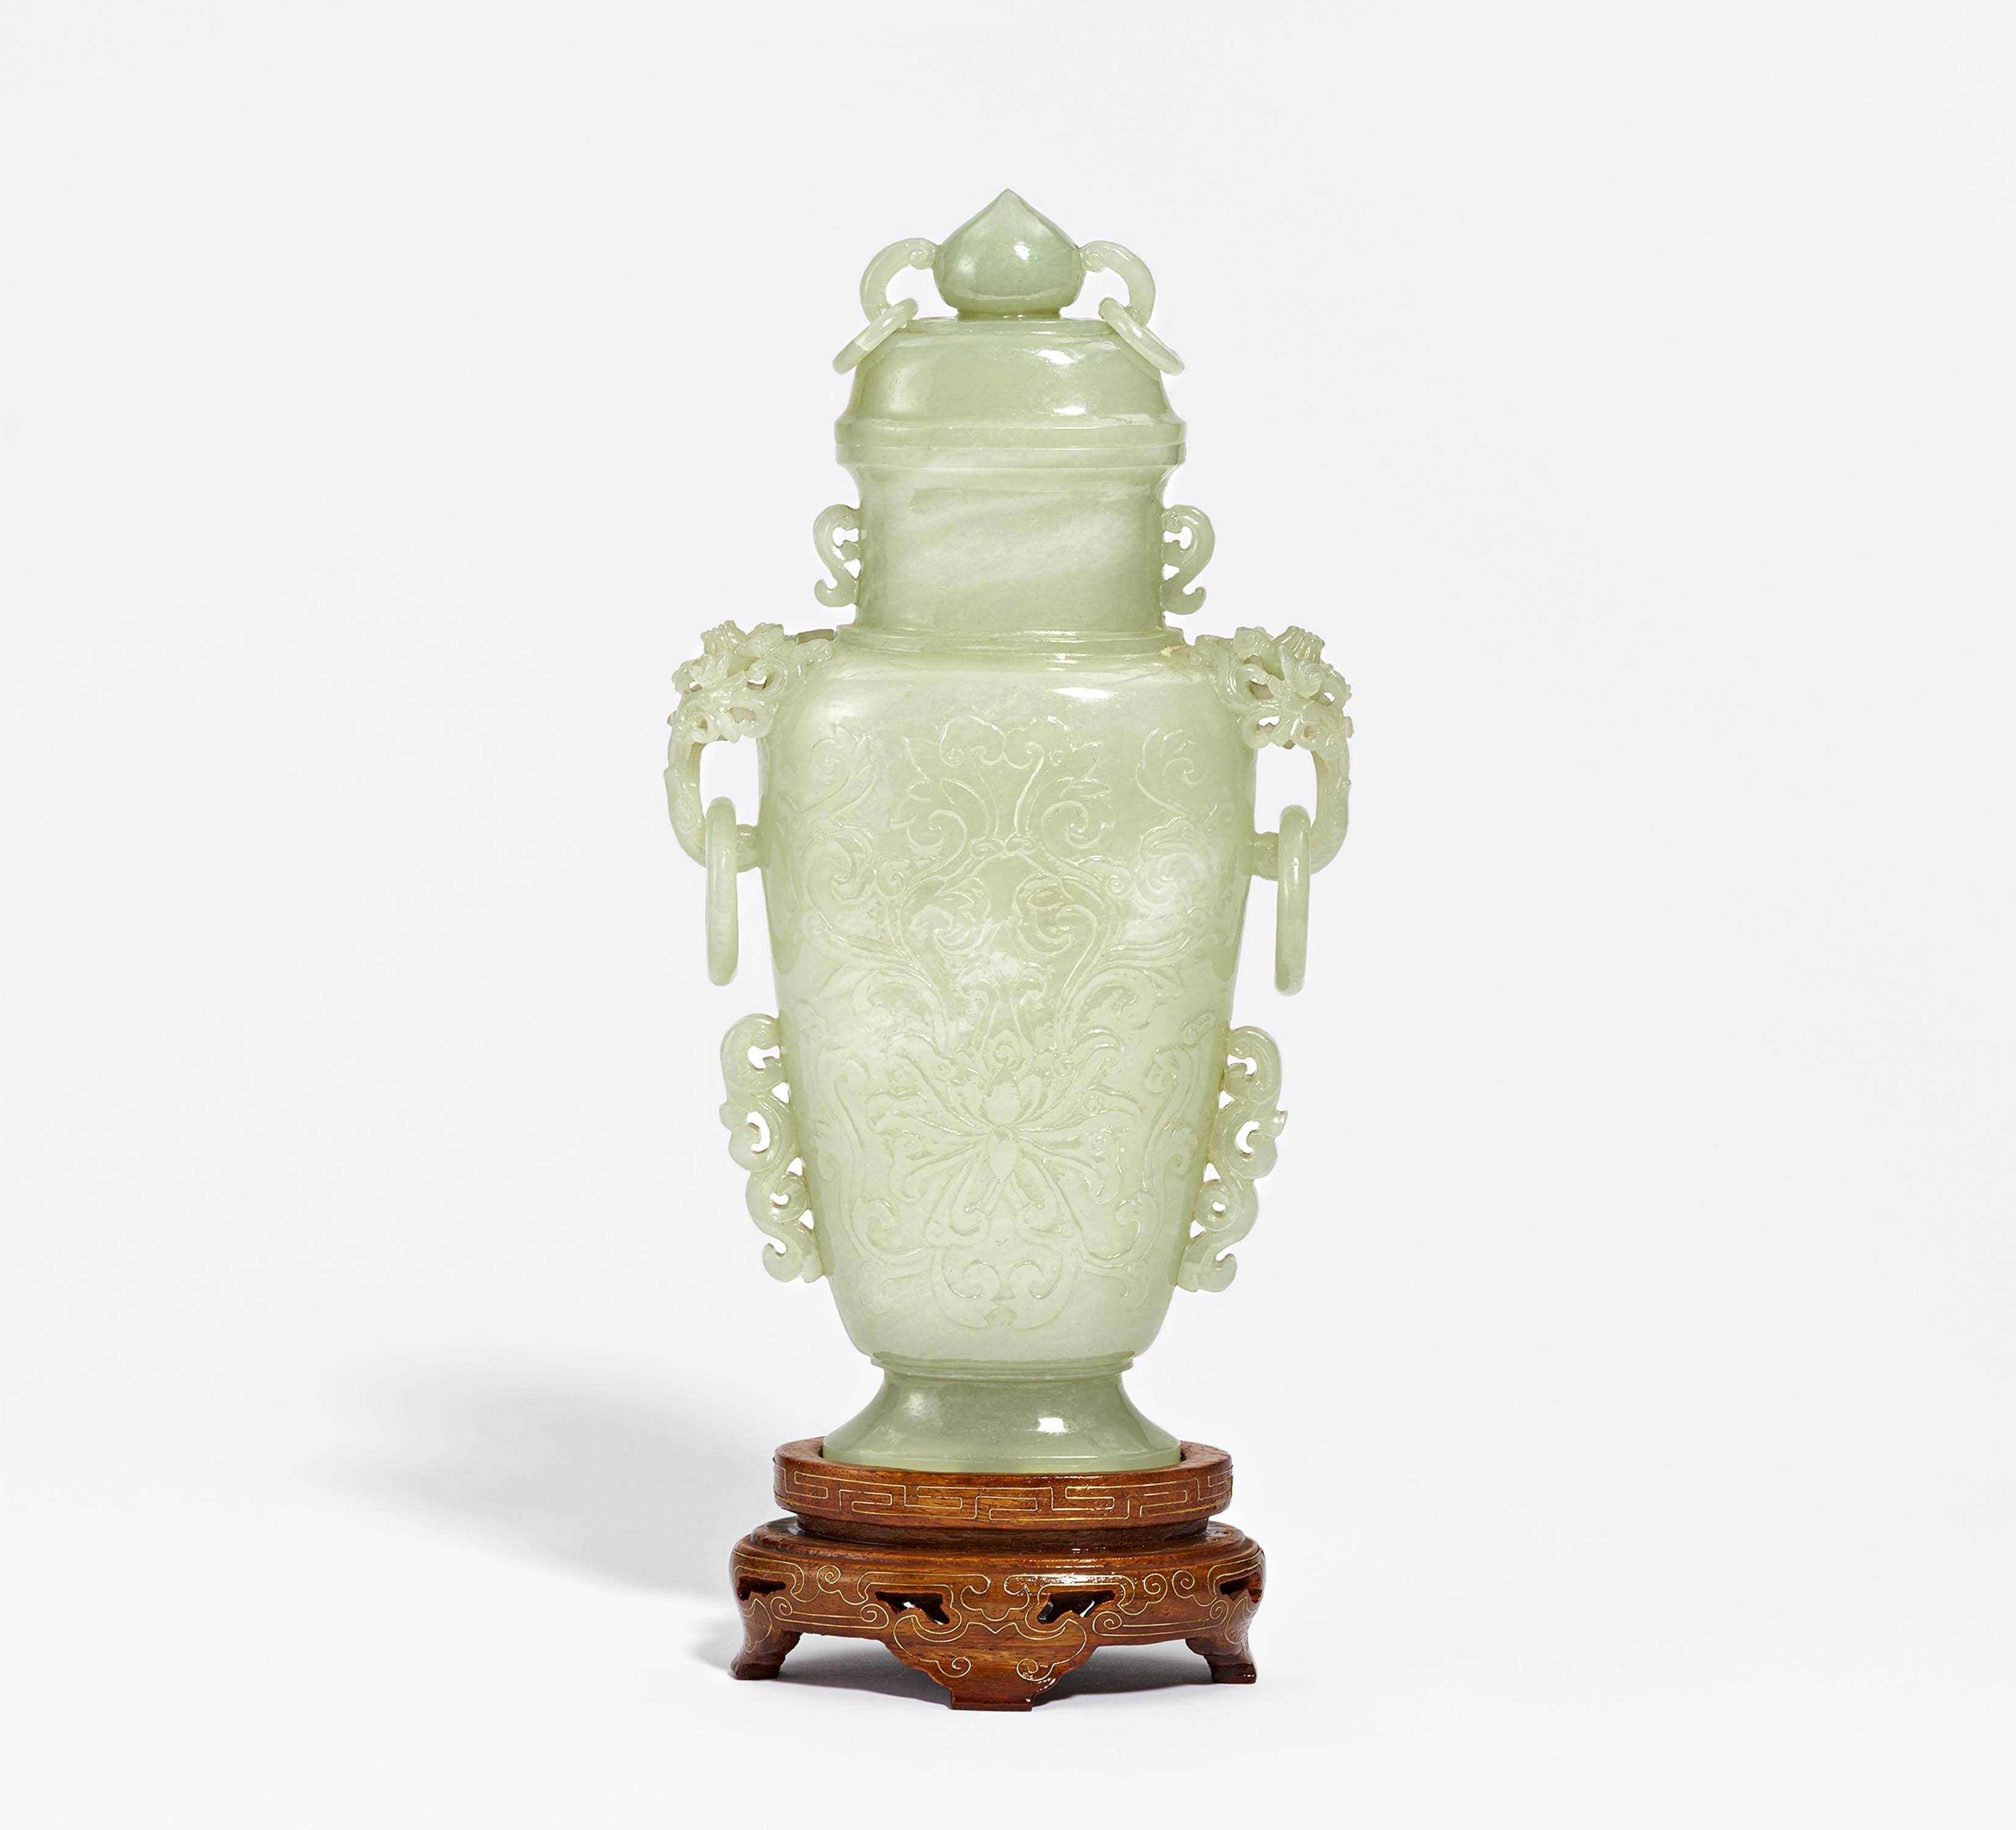 Lidded vase with pedestal